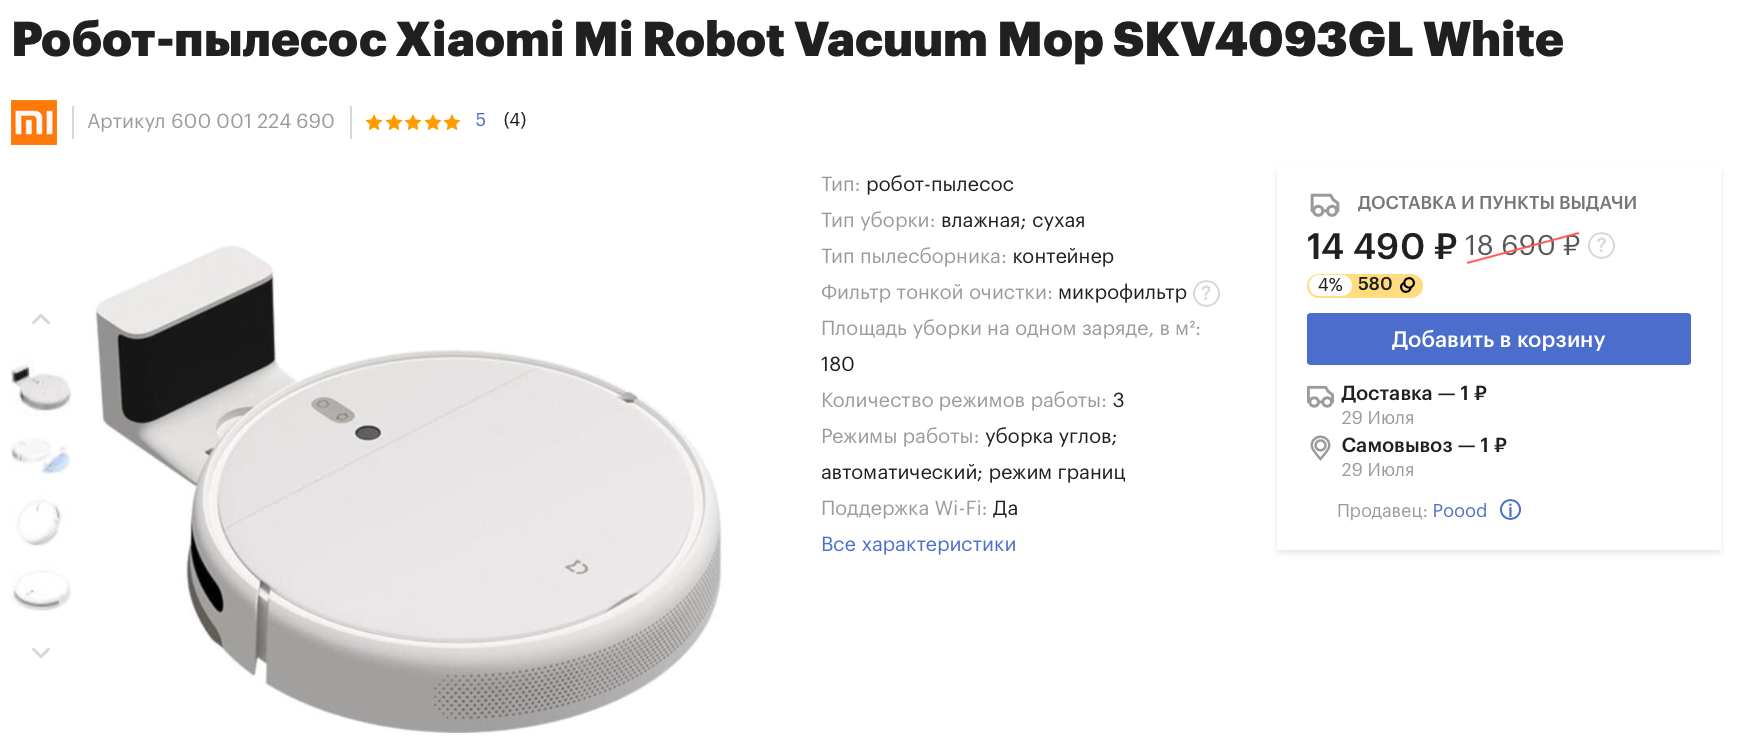 Робот-пылесос  Mi Robot Vacuum-Mop со скидкой 4000 рублей